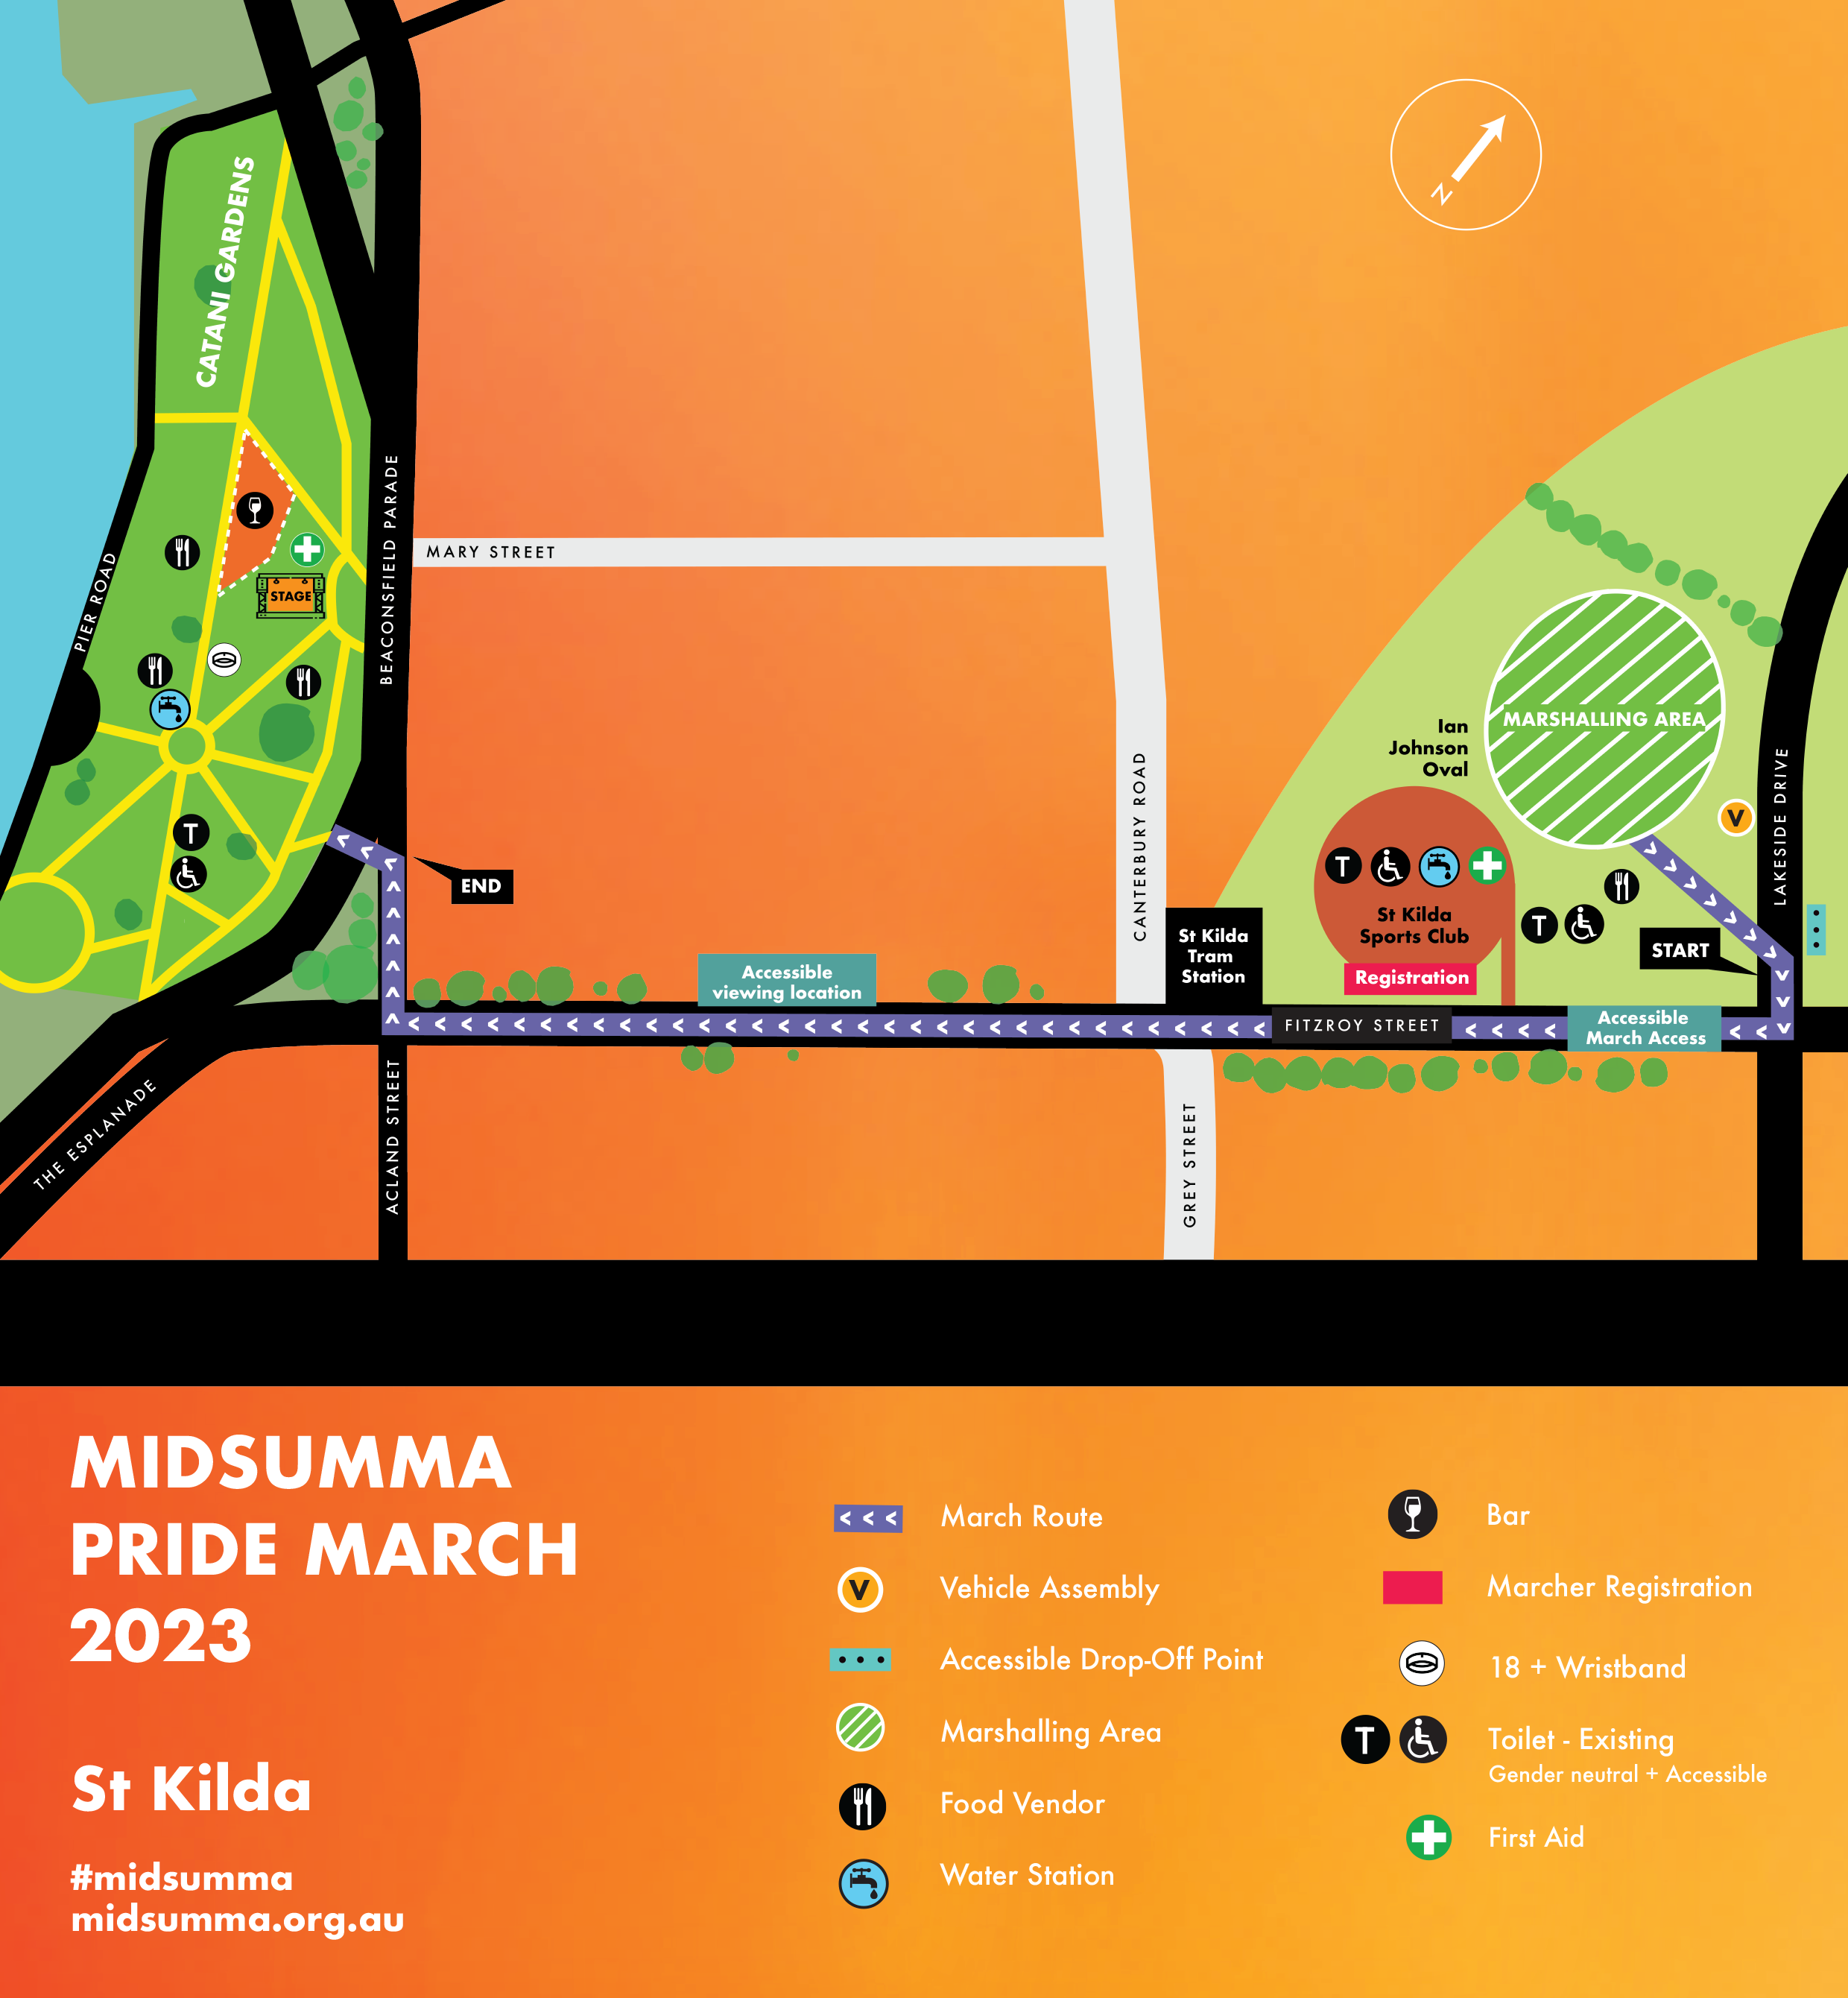 Midsumma Festival Melbourne 2023 Pride March Dates And Location